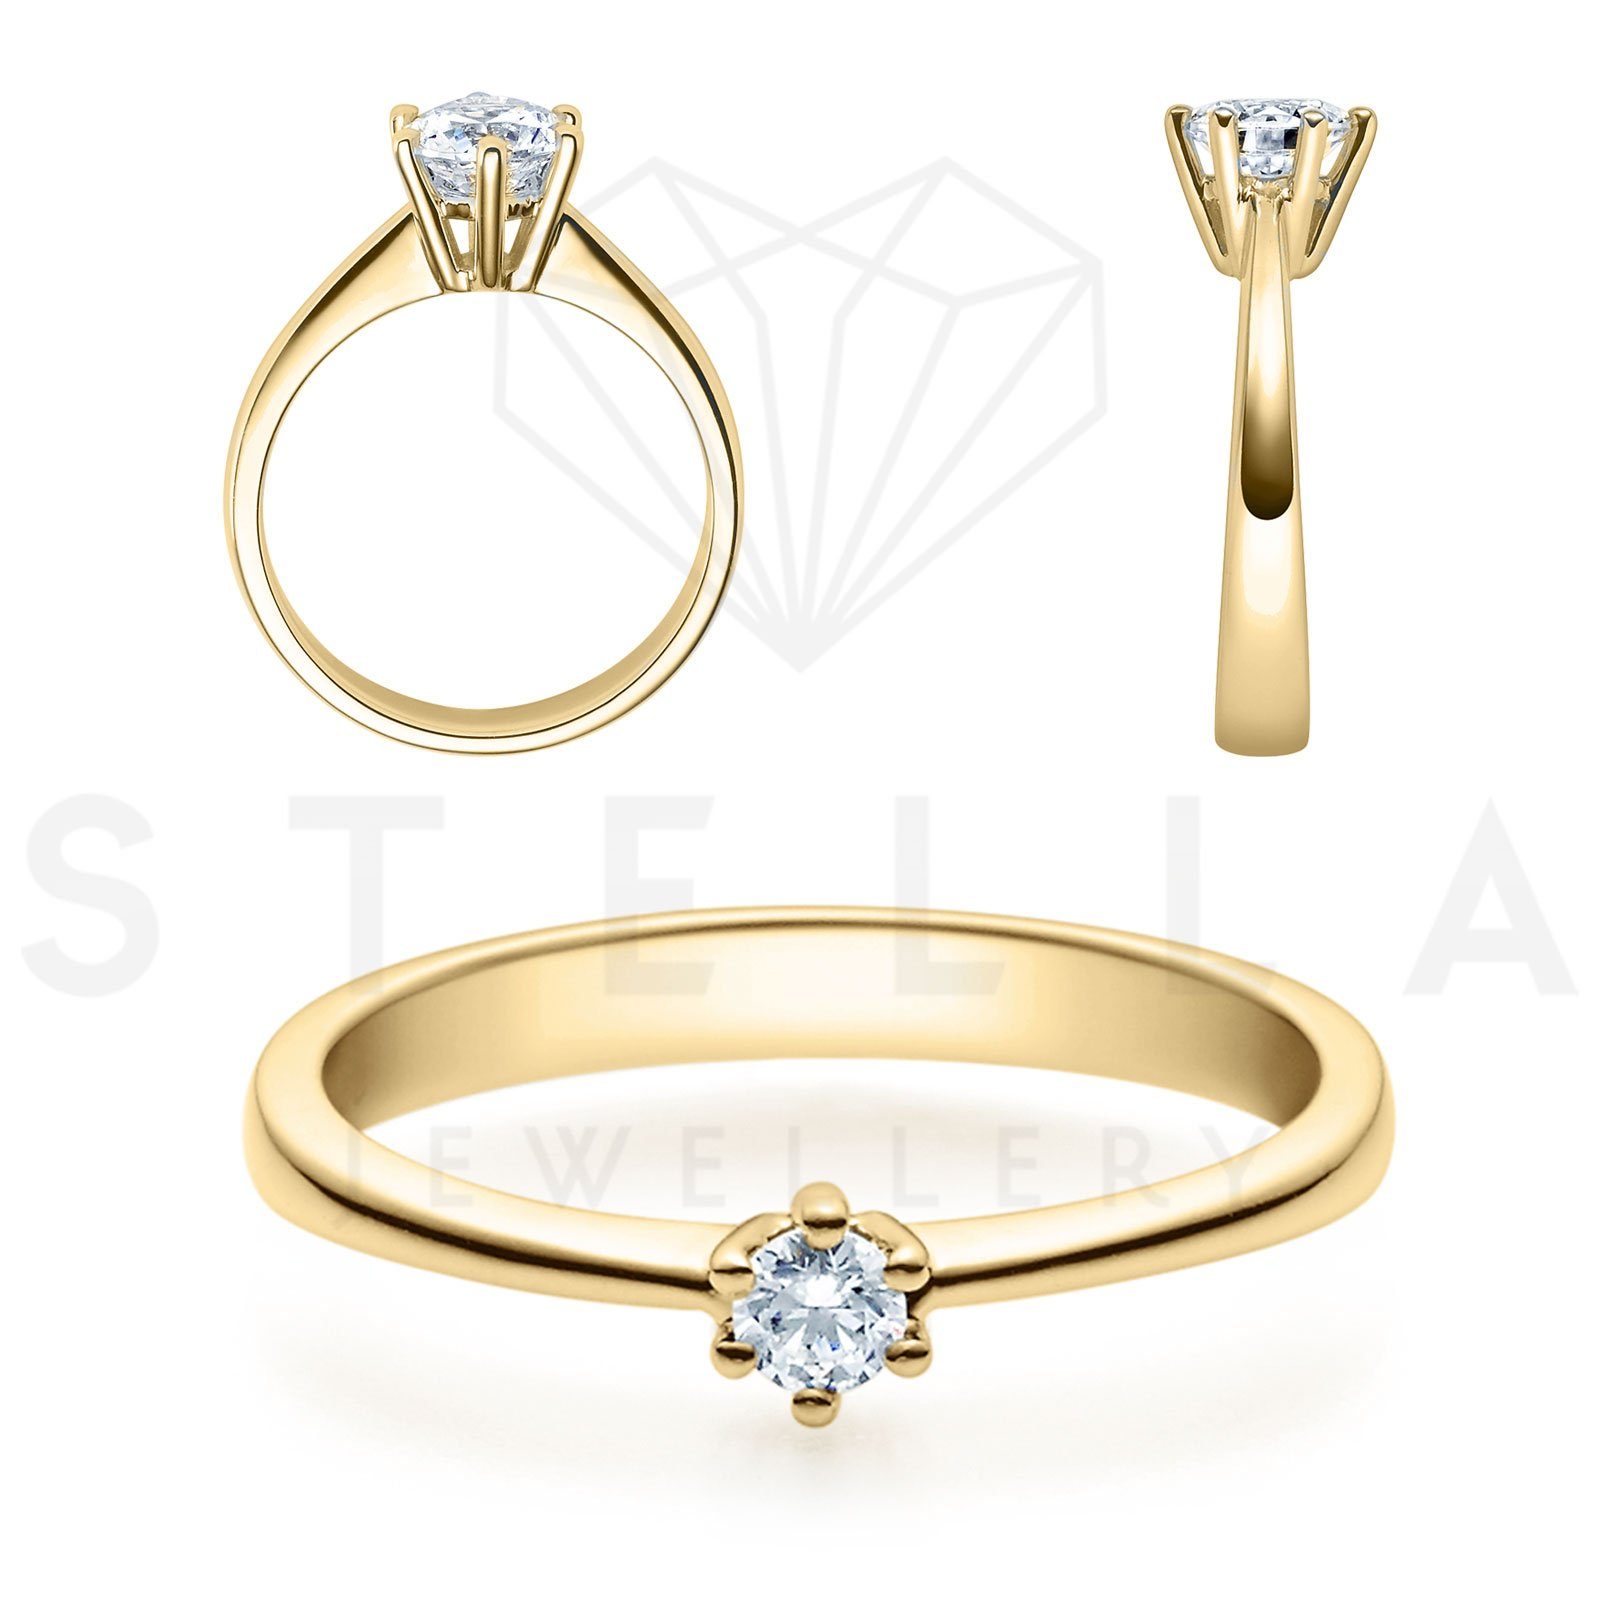 Herren Schmuck Stella-Jewellery Verlobungsring 585er Gelbgold Verlobungsring Diamant Gr. 54 (inkl. Etui), mit Brillant 0,15ct. -